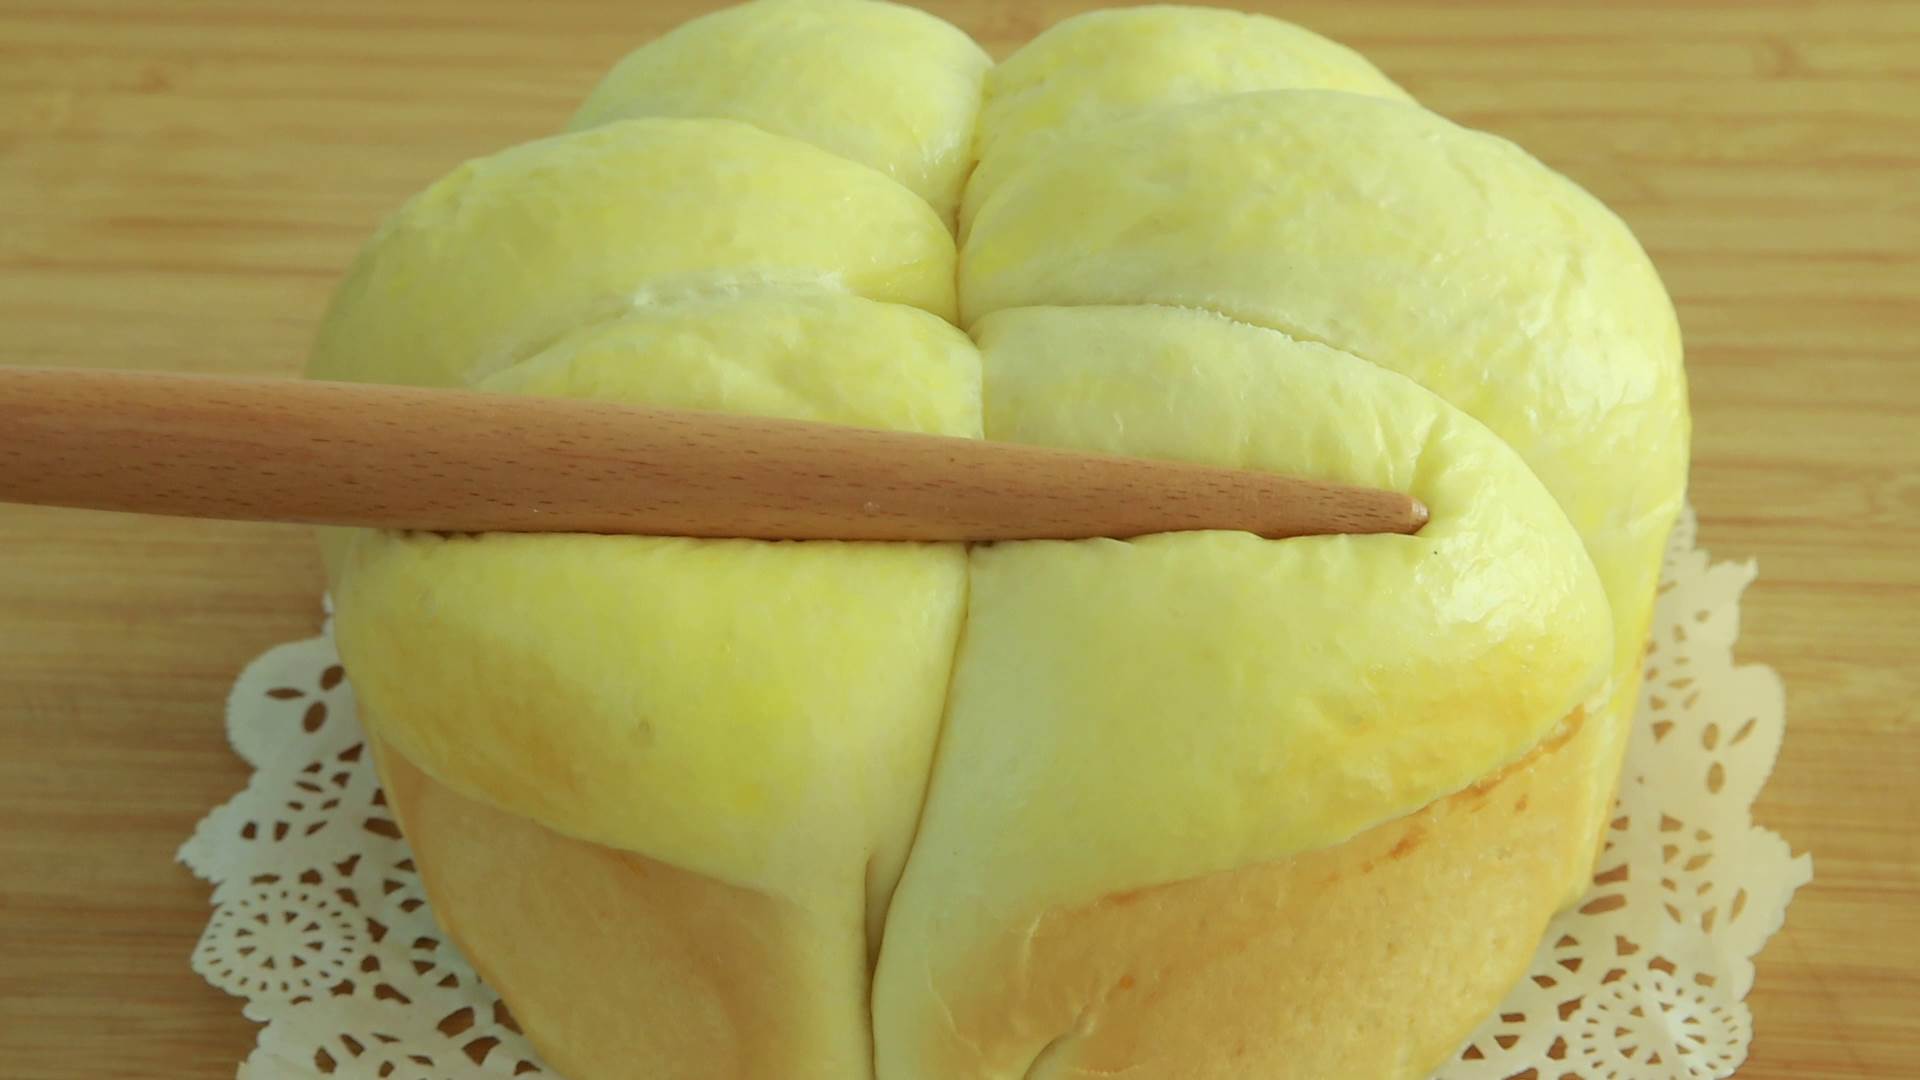 蒸面包怎么做家庭做法 ，家里有面粉就能做，比烤得还好吃